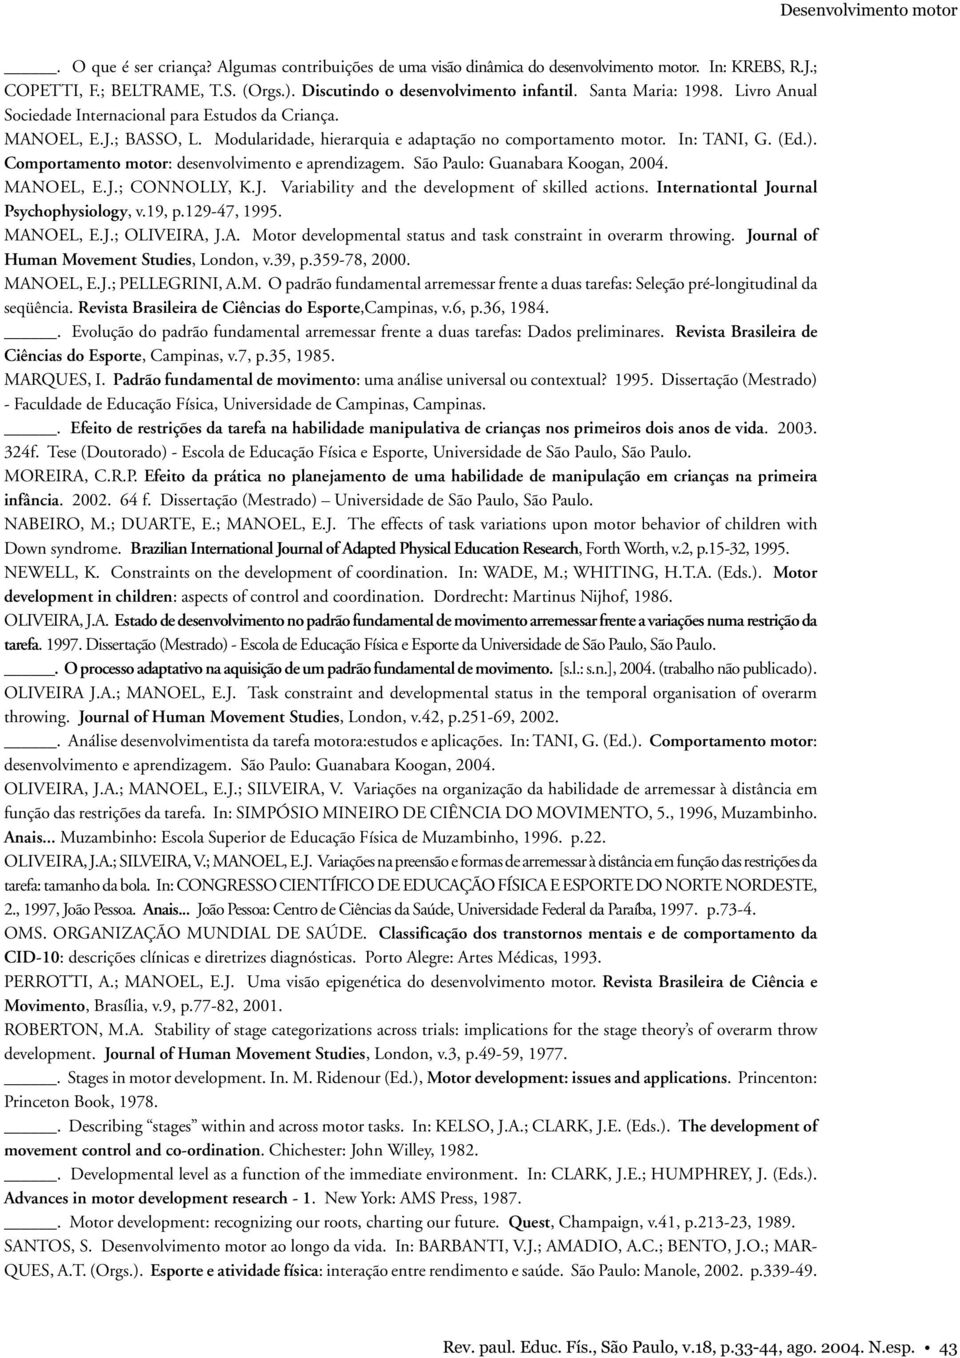 Modularidade, hierarquia e adaptação no comportamento motor. In: TANI, G. (Ed.). Comportamento motor: desenvolvimento e aprendizagem. São Paulo: Guanabara Koogan, 2004. MANOEL, E.J.